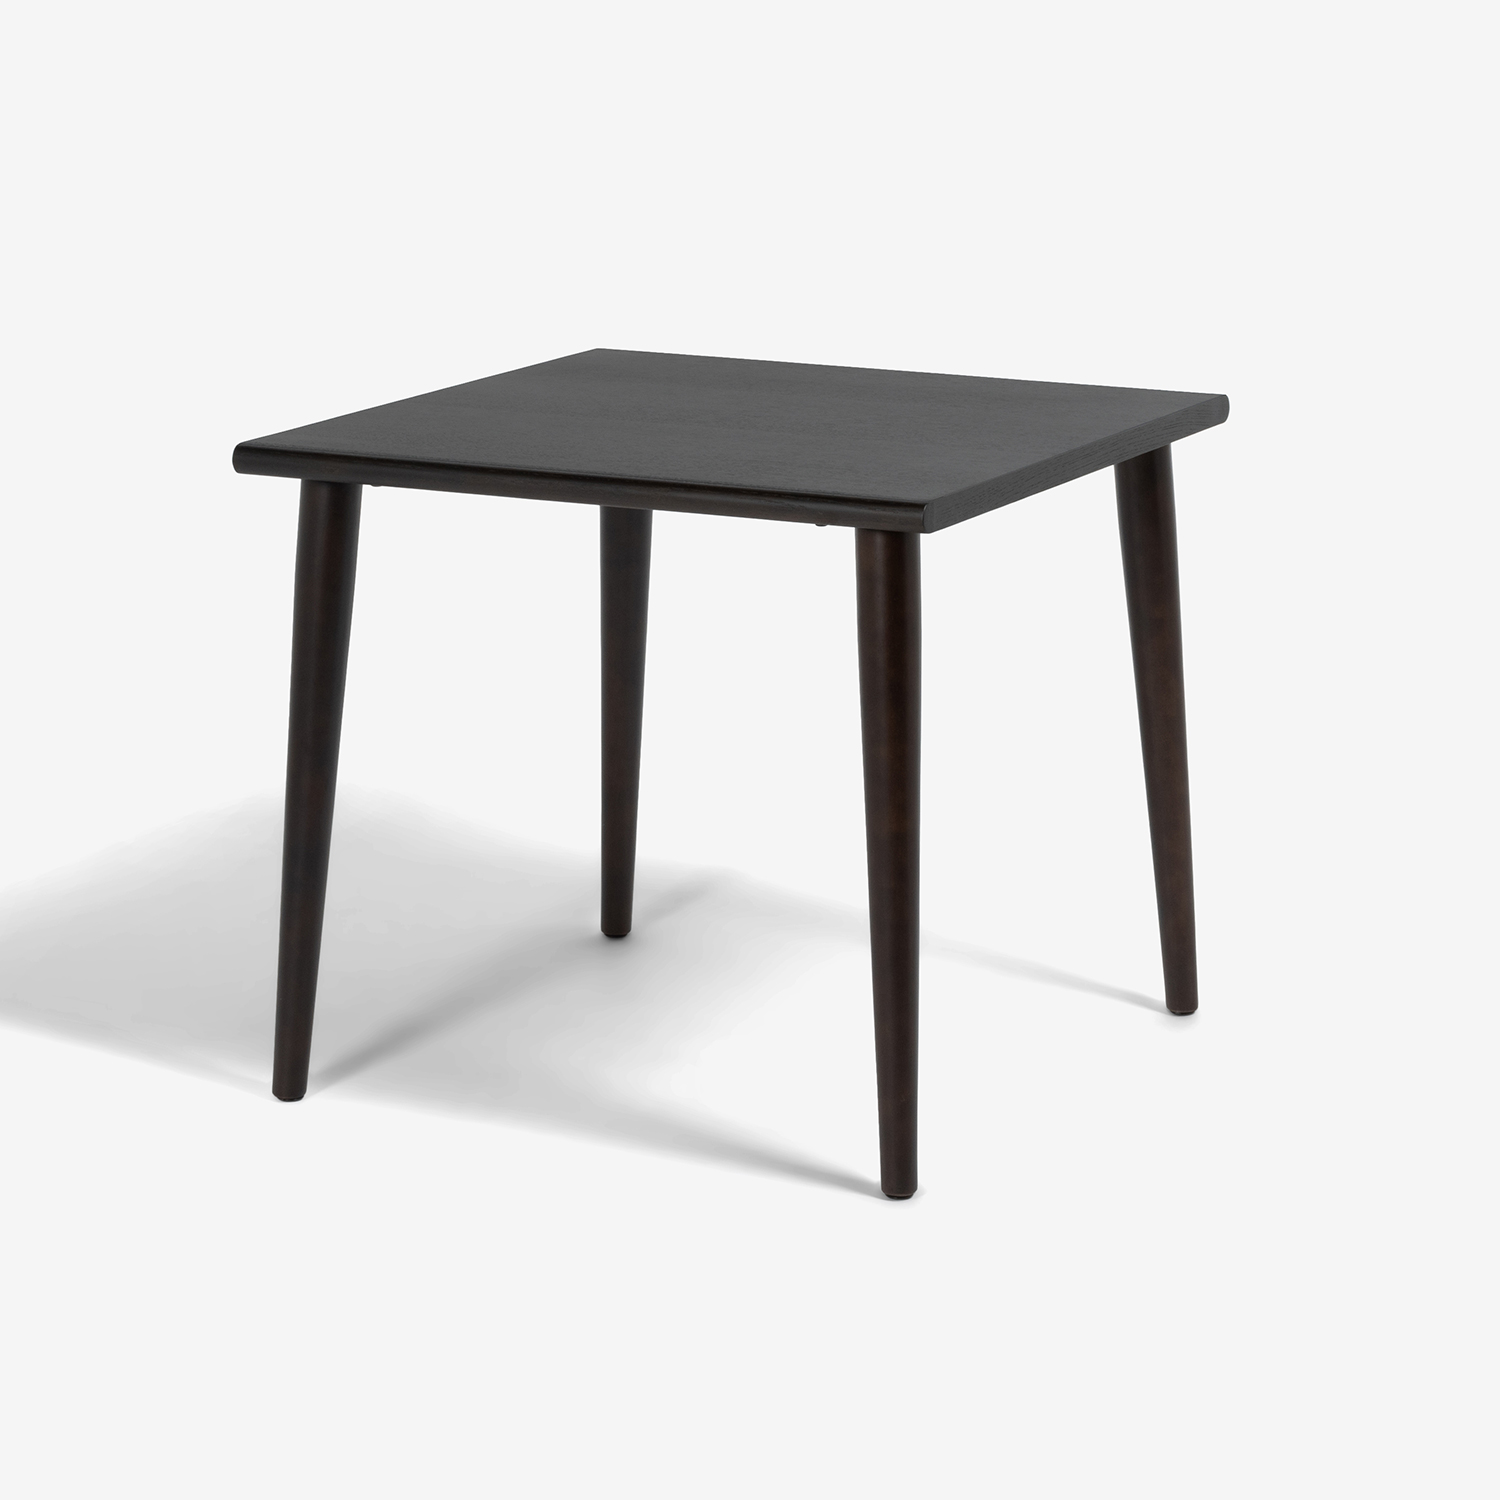 ダイニングテーブル「ユノ3」幅80cm レッドオーク材 ダークブラウン色 丸脚